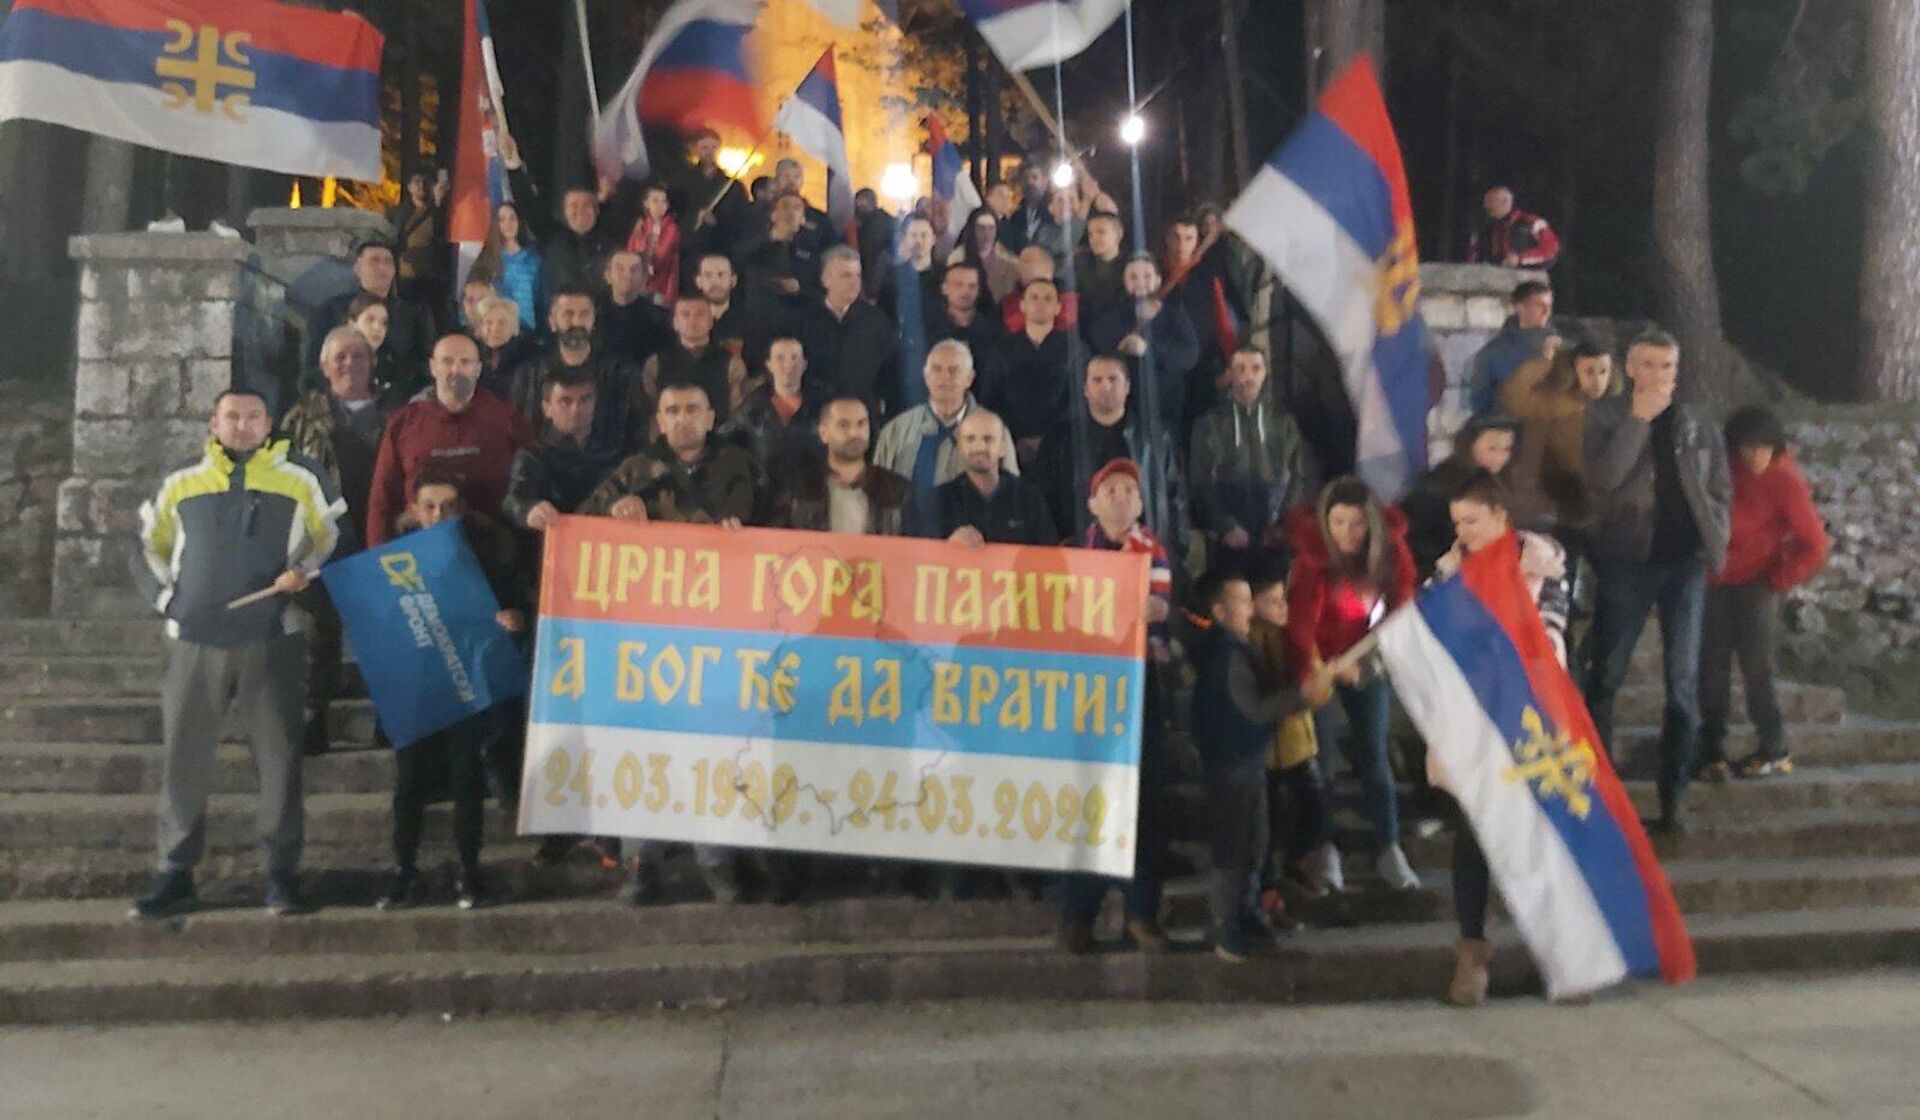 Građani Nikšića su večeras protestom obilježili 23. godišnjicu napada NATO na Jugoslaviju.  - Sputnik Srbija, 1920, 24.03.2022